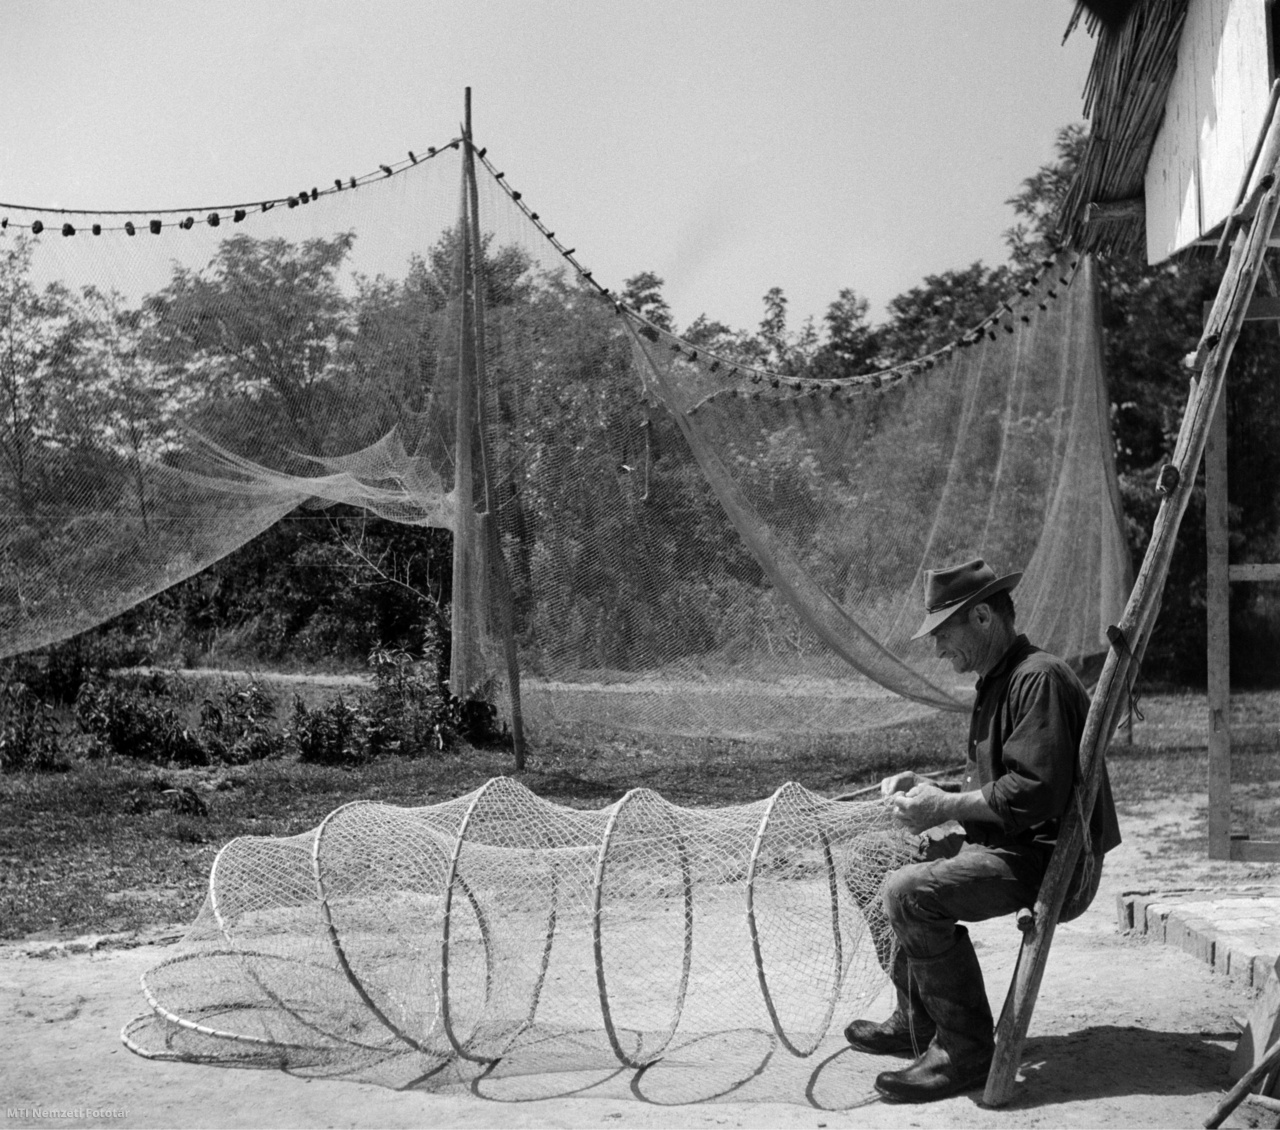 Baja, 1962. június 21. A szák hálóját javítja egy halász a Duna-parton.